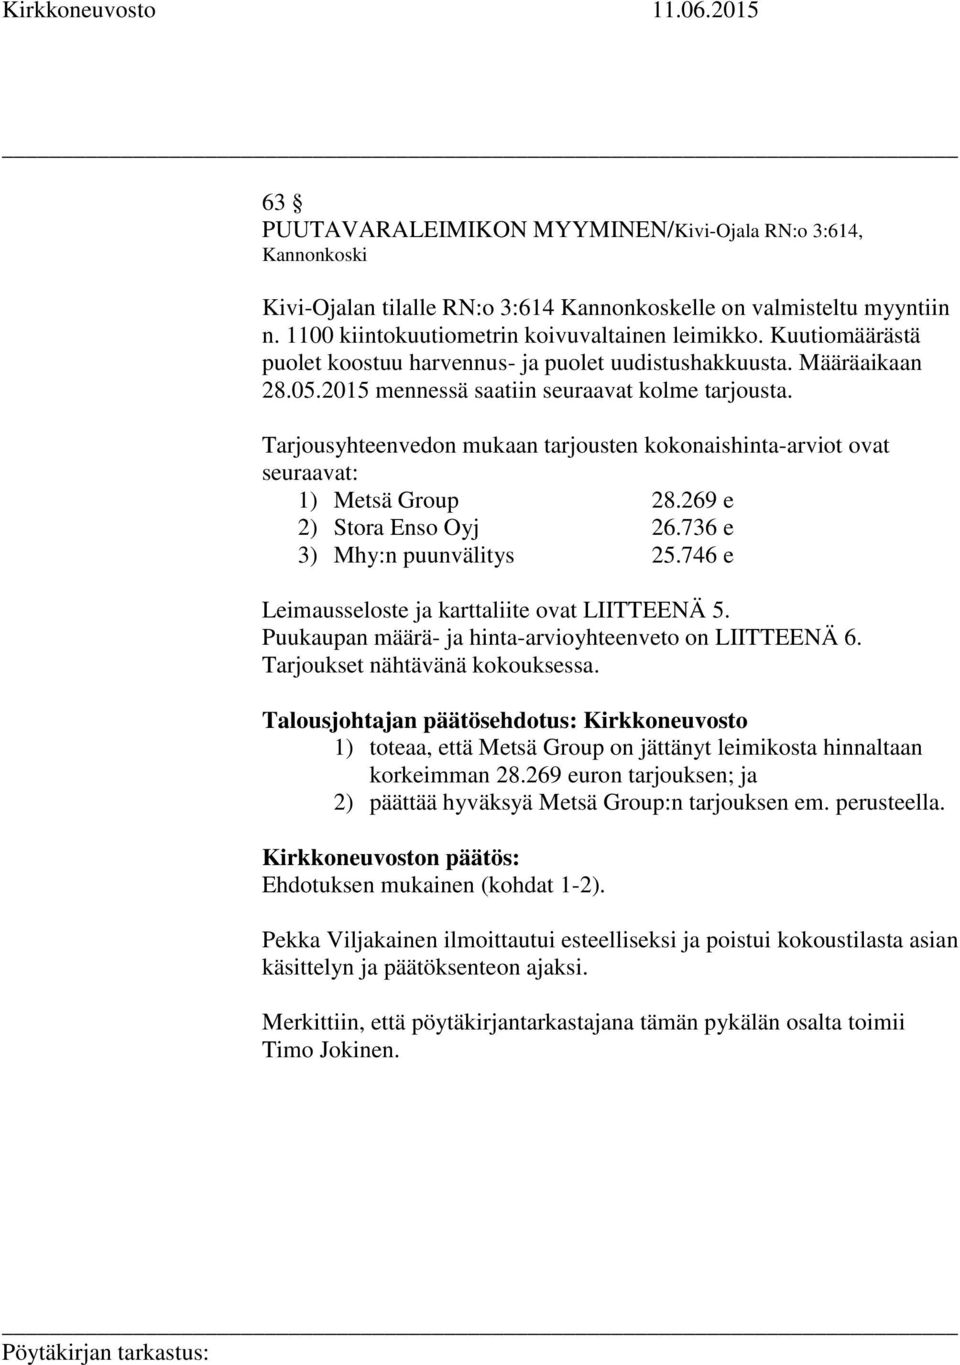 Tarjousyhteenvedon mukaan tarjousten kokonaishinta-arviot ovat seuraavat: 1) Metsä Group 28.269 e 2) Stora Enso Oyj 26.736 e 3) Mhy:n puunvälitys 25.